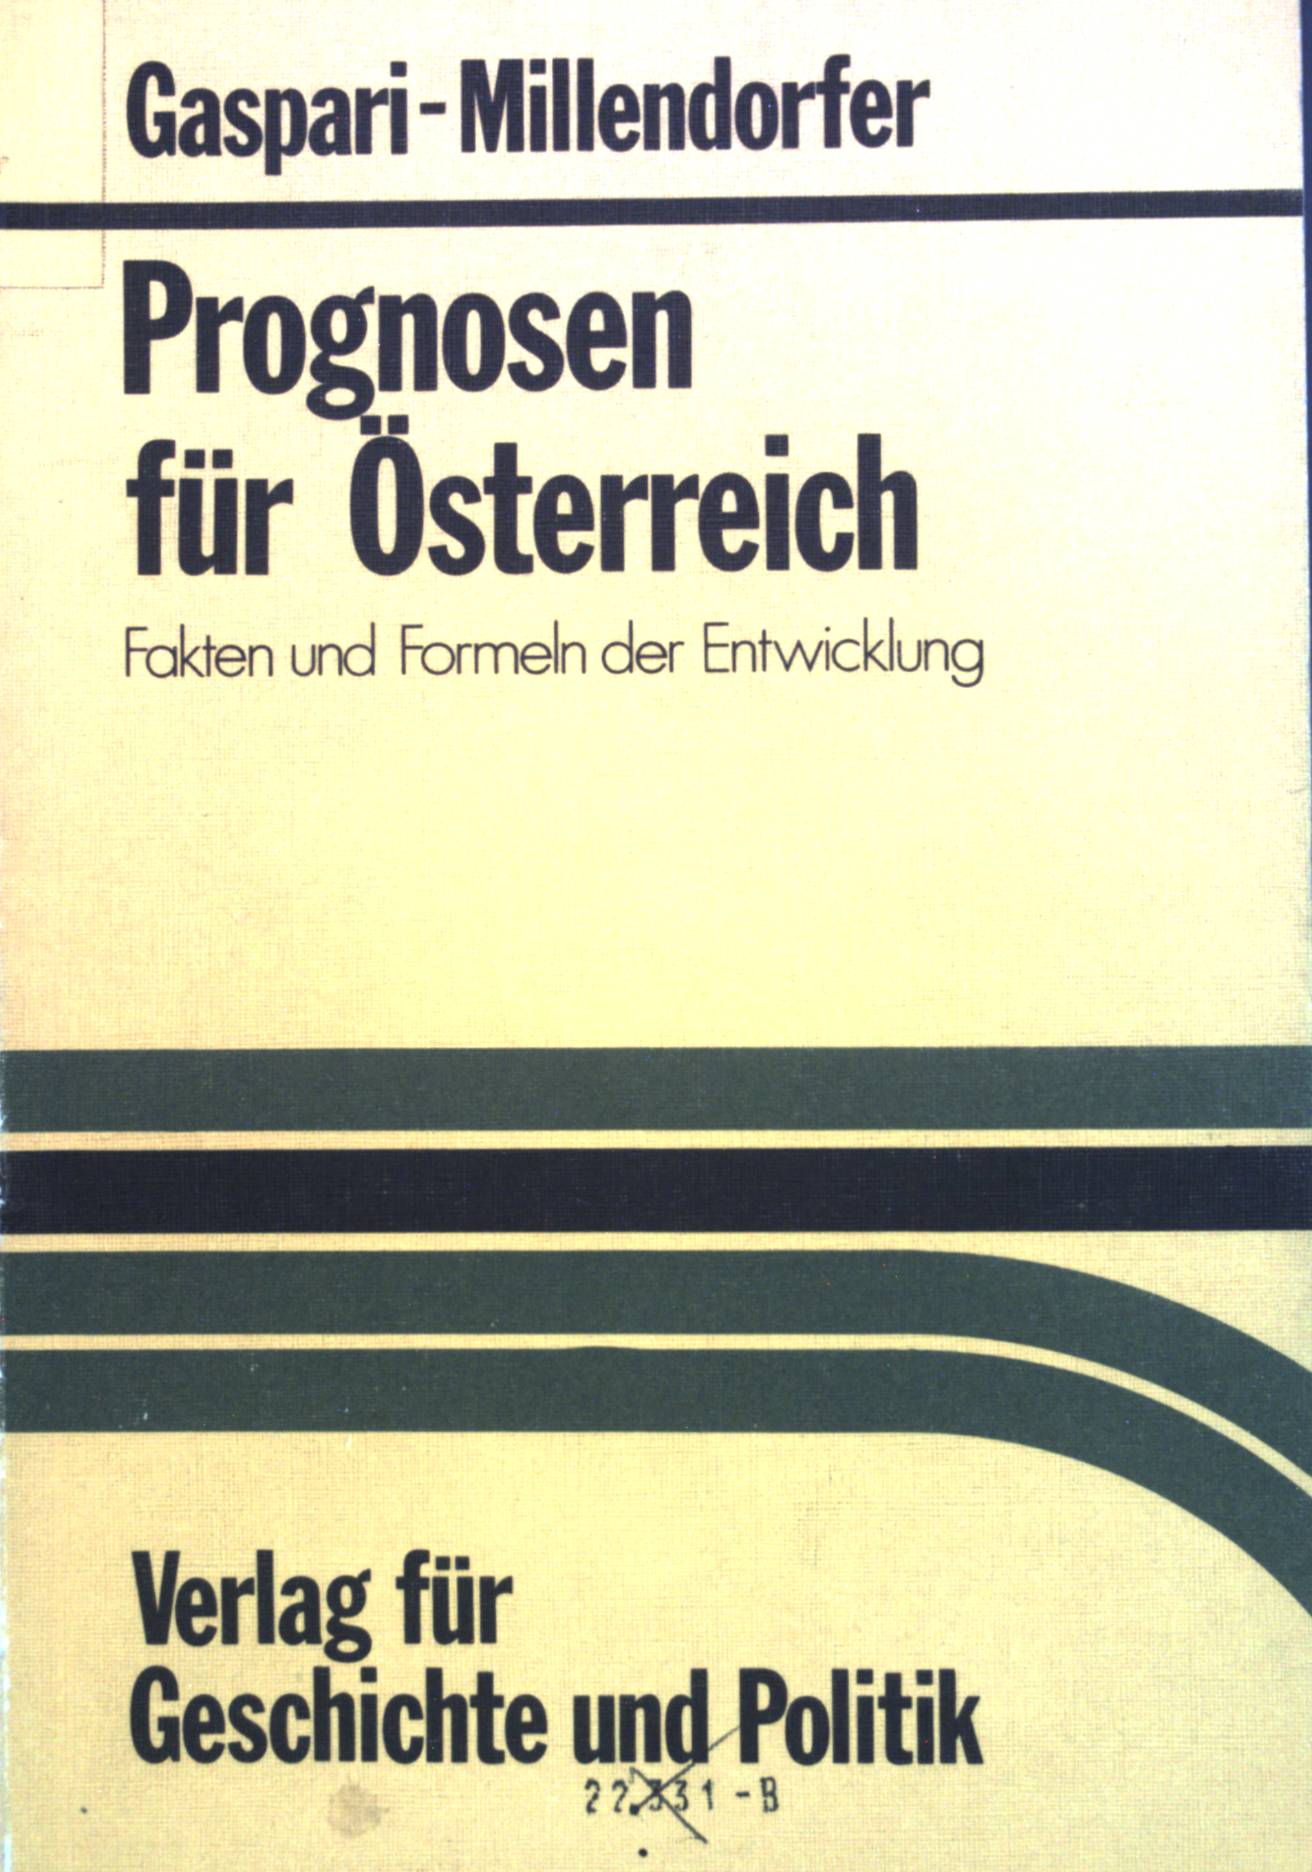 Prognosen für Österreich : Fakten u. Formen d. Entwicklung. - Gaspari, Christof und Hans Millendorfer